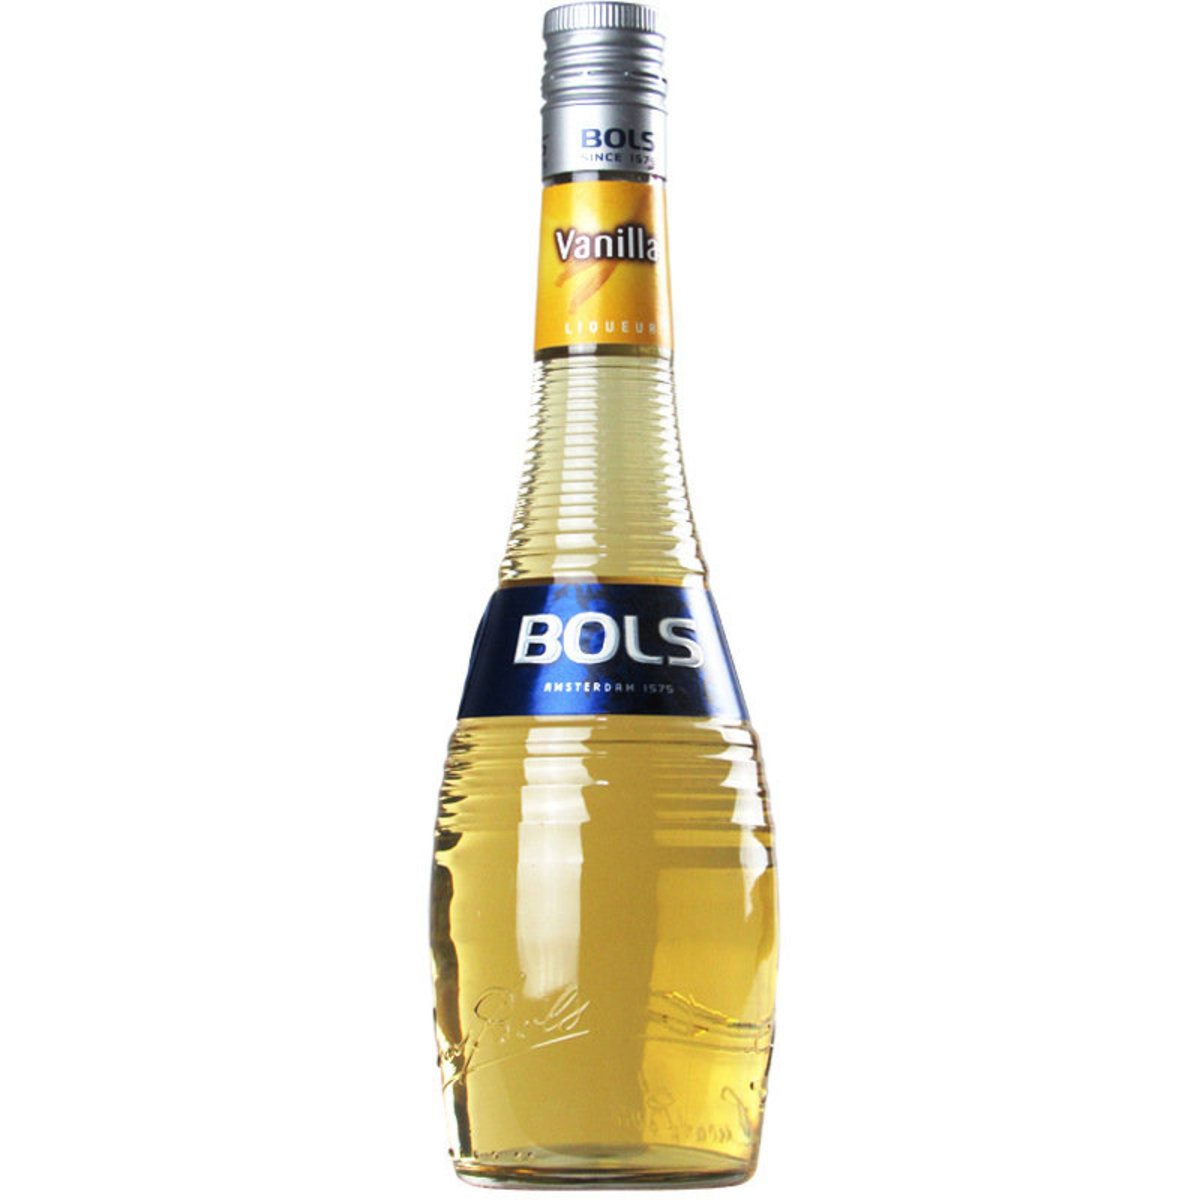 Bols Vanilla – 700ml